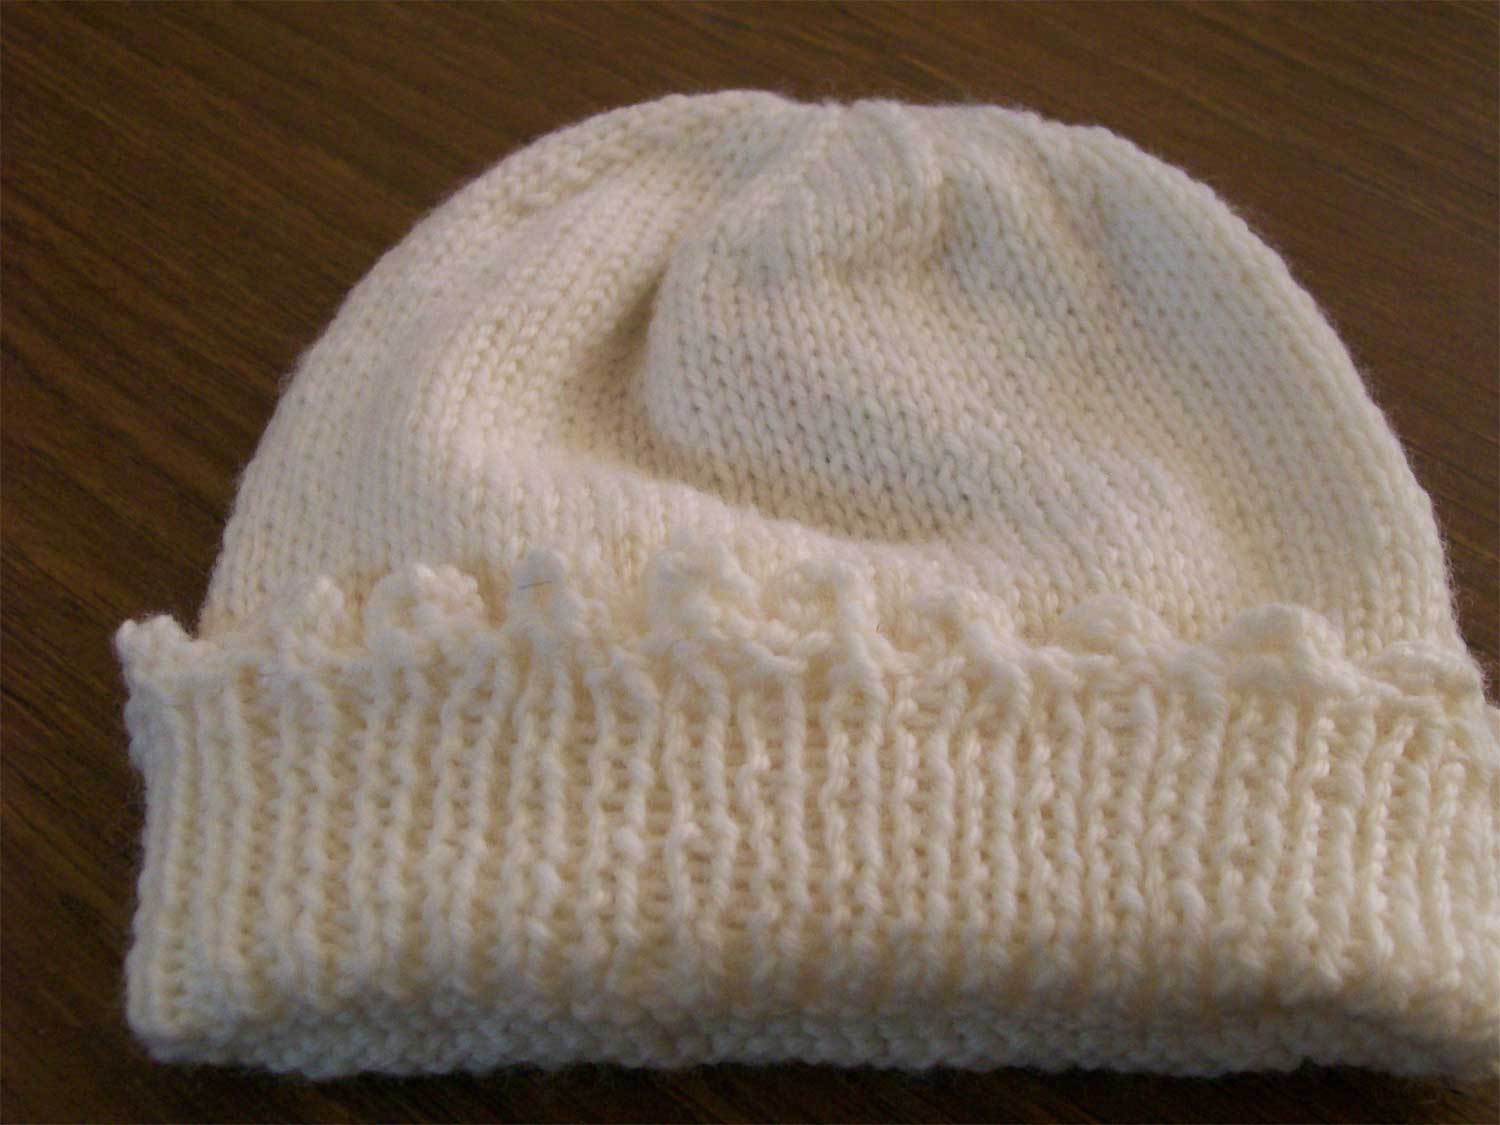 Crochet cap